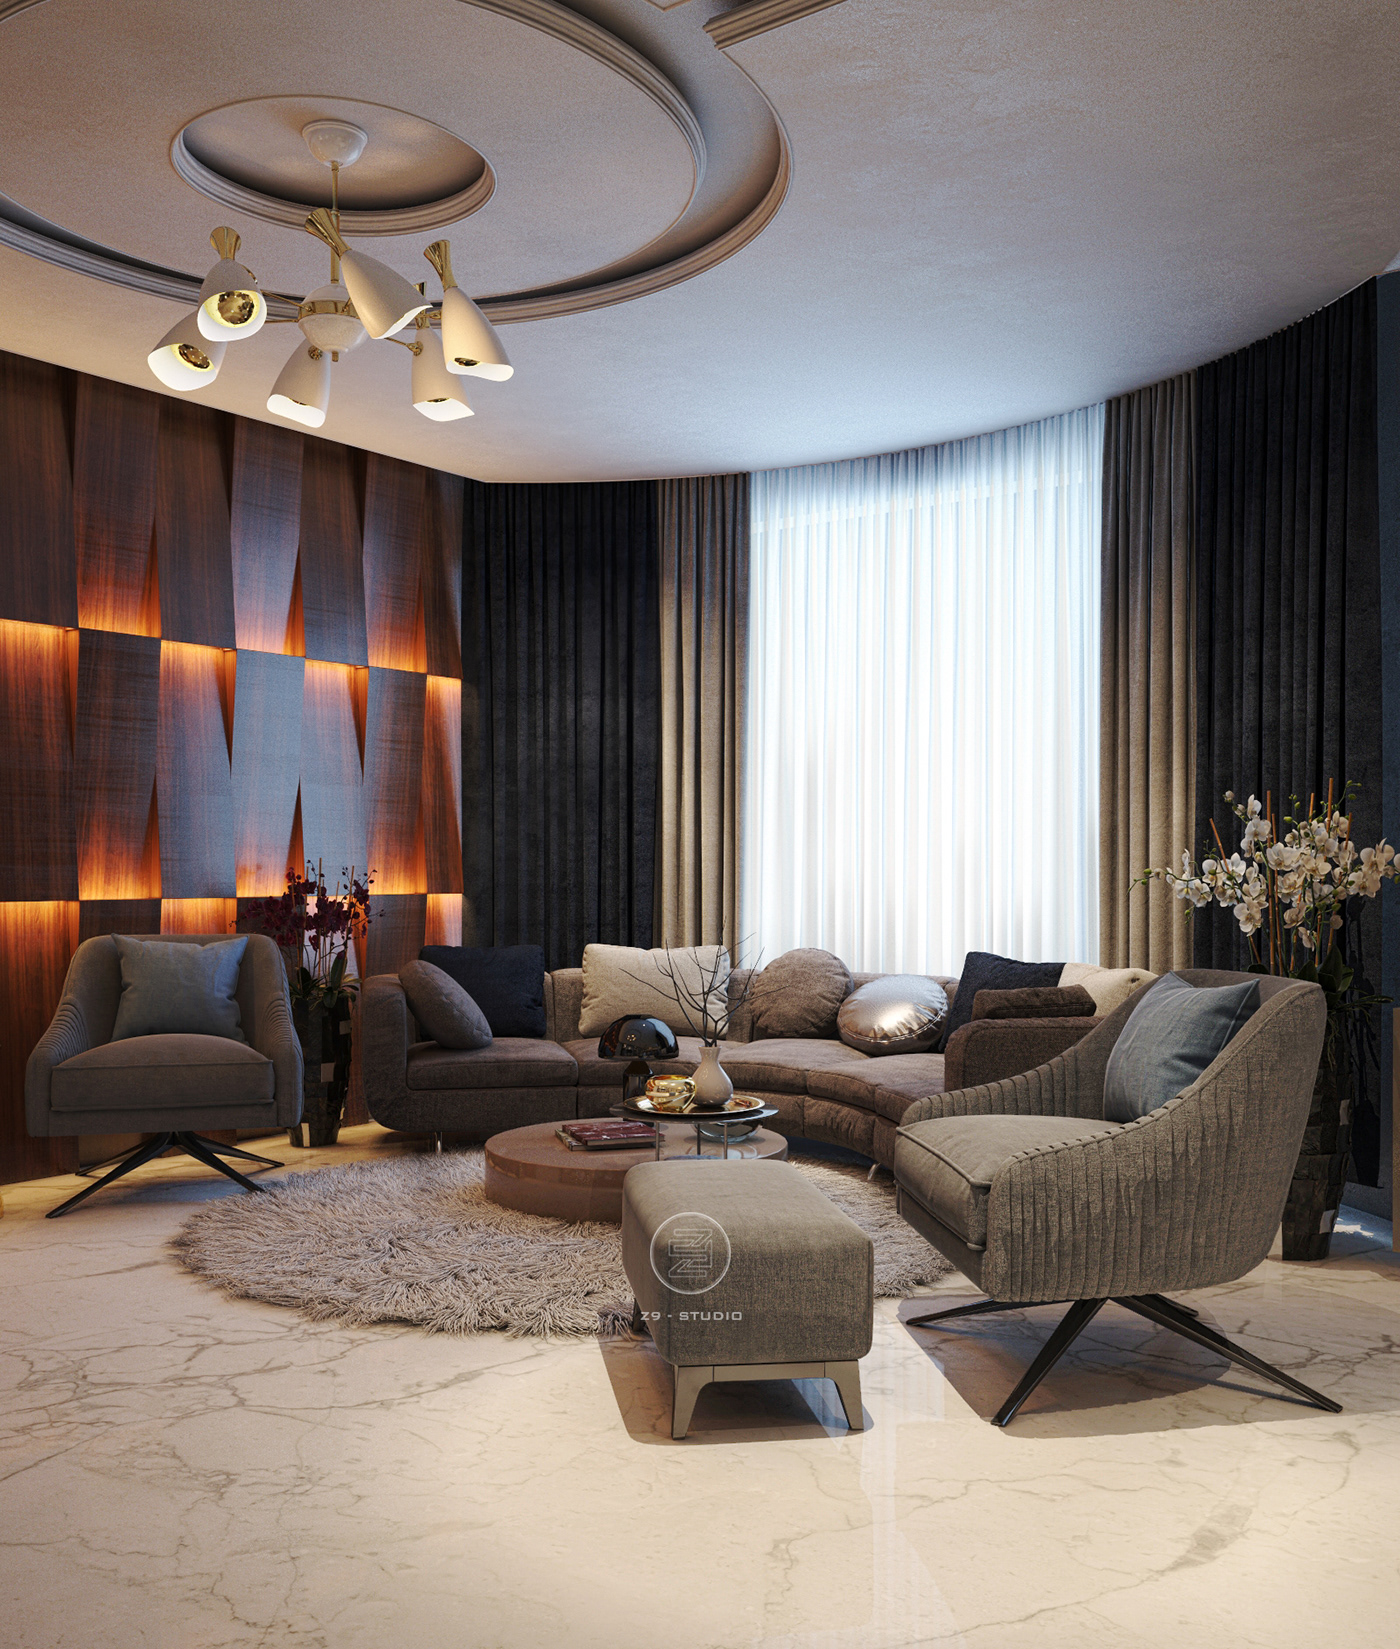 bedroom living room design Villa nice FLOOR luxury modern Classic photo